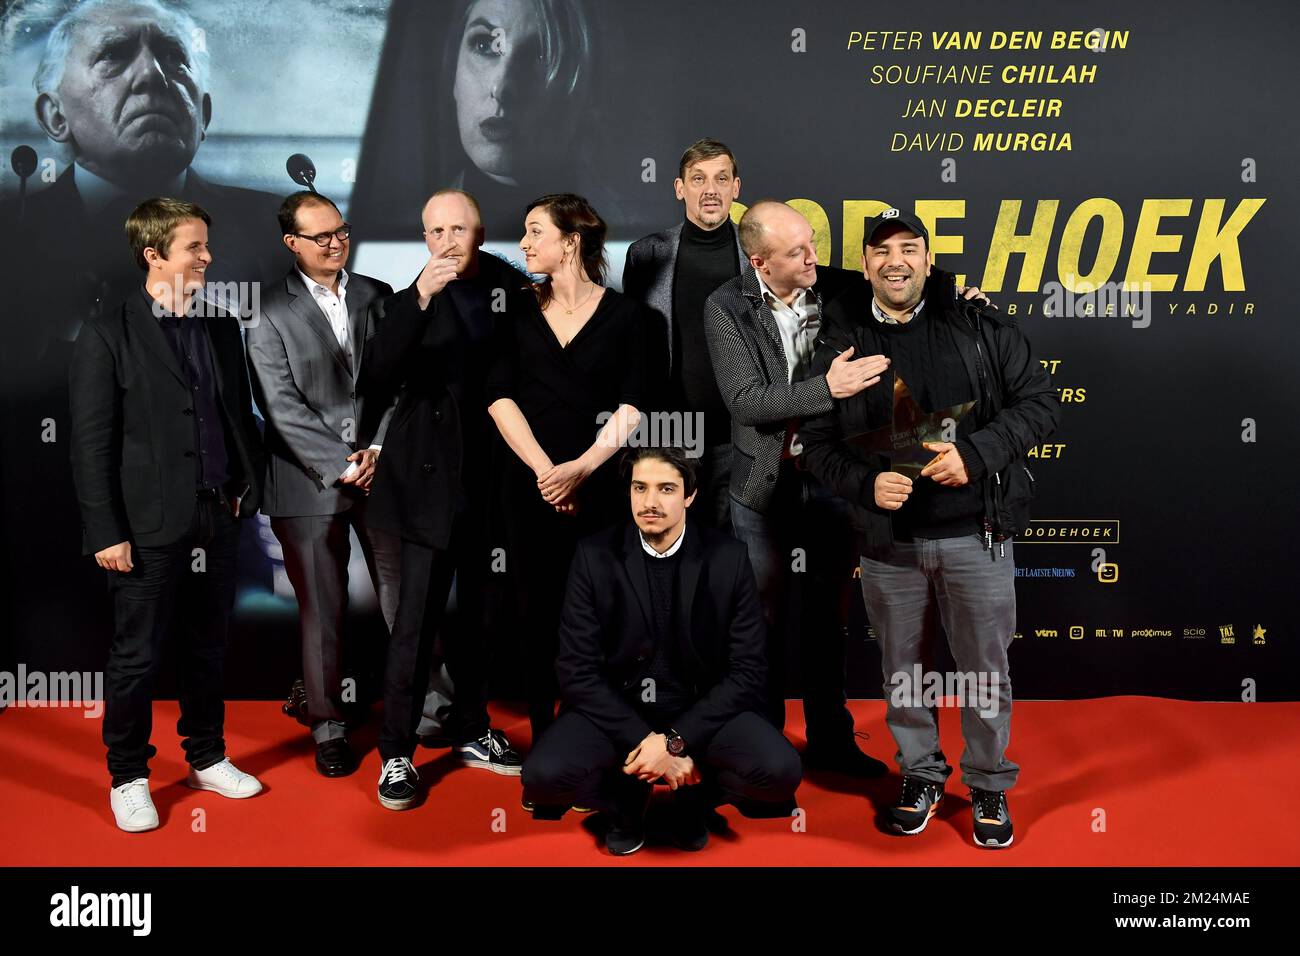 Die Besetzung von Dode Hoek, die während der belgischen Premiere des Films „Dode Hoek“ von Nabil Ben Yadir in Antwerpen kinepolis am Dienstag, den 24. Januar 2017, abgebildet wurde. BELGA FOTO DIRK WAEM Stockfoto